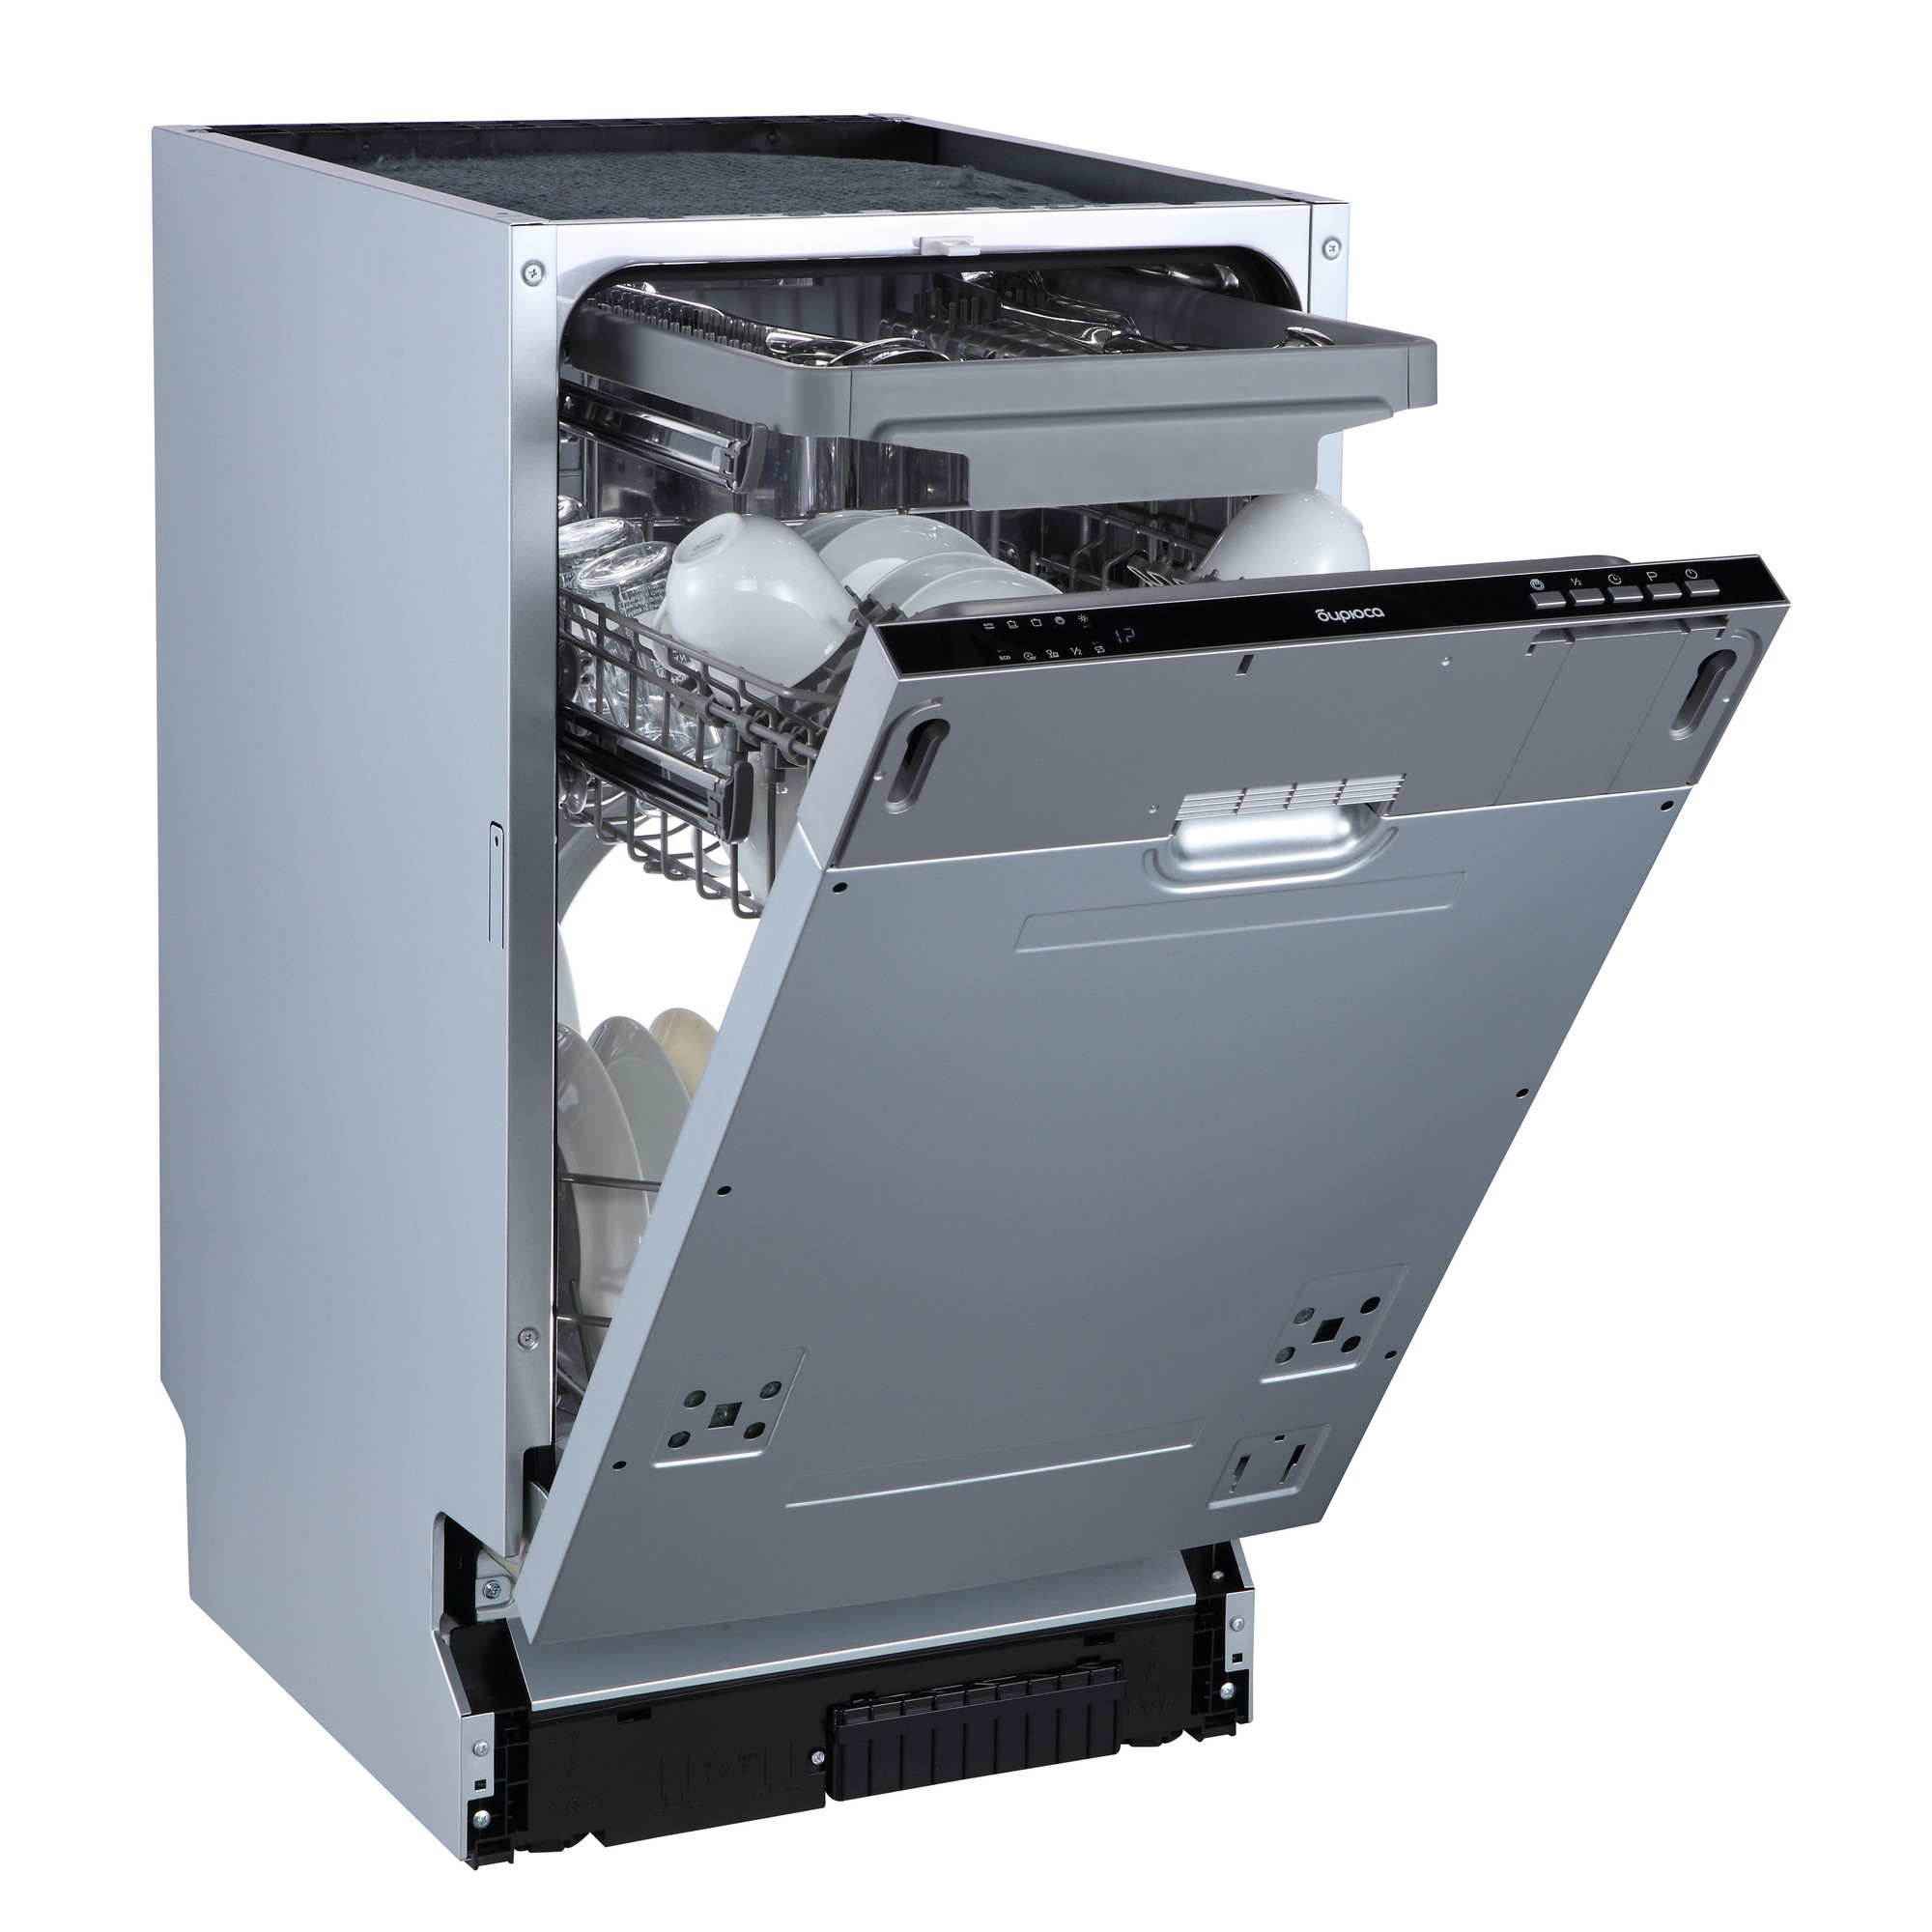 Встраиваемая посудомоечная машина Бирюса DWB-410/6 встраиваемая посудомоечная машина midea mid60s130i 60см 5 программ серебристый